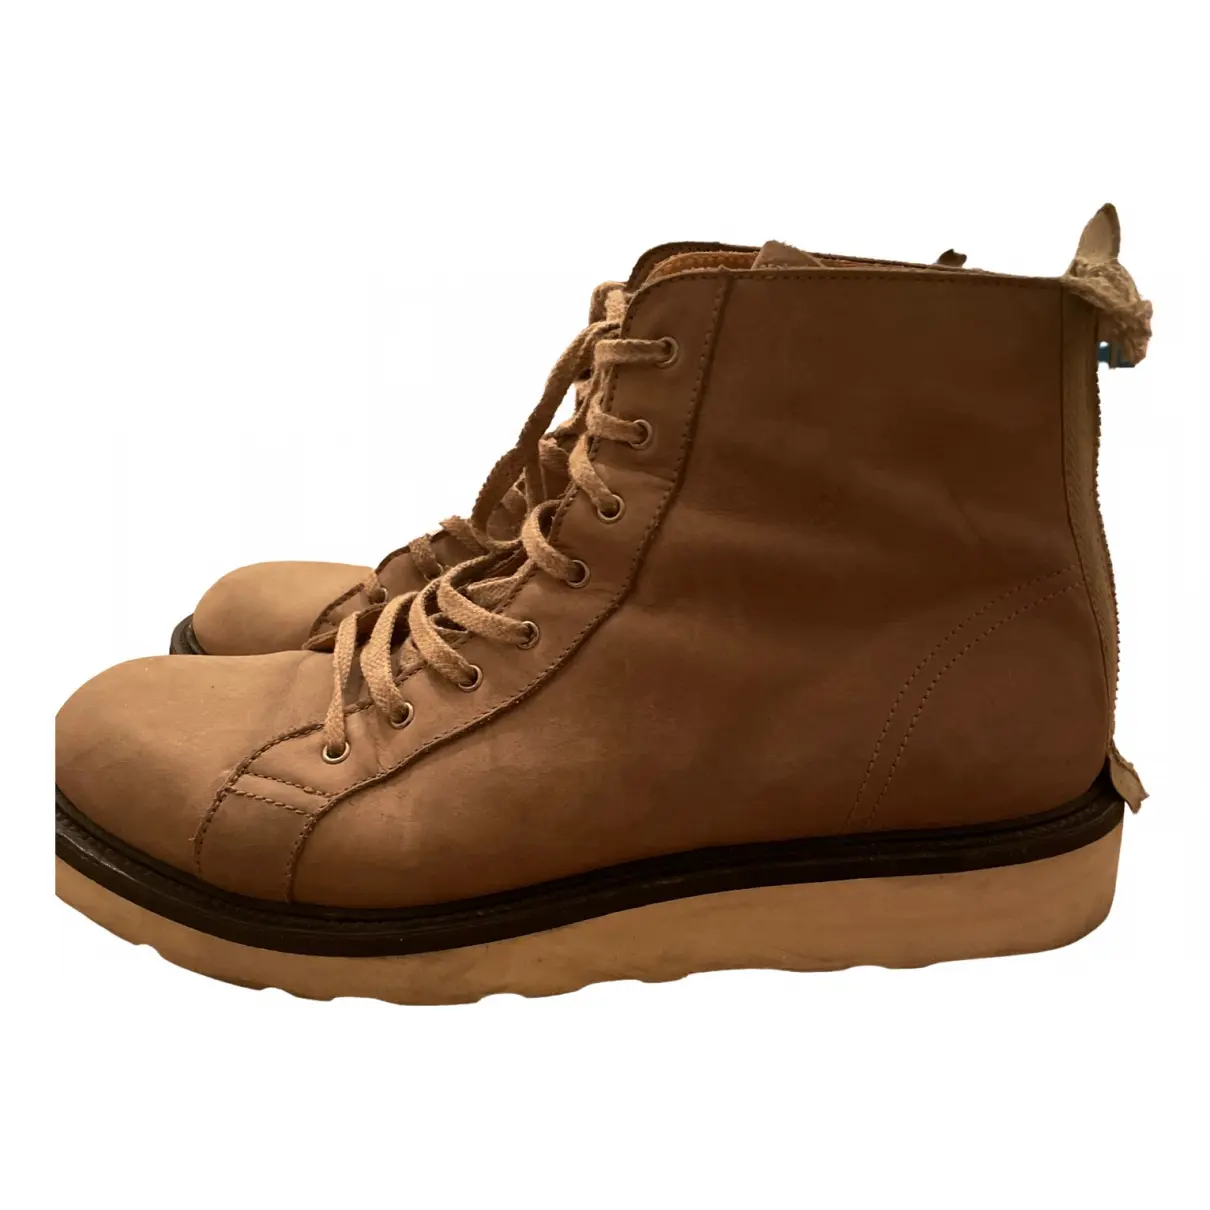 Leather boots Kris Van Assche